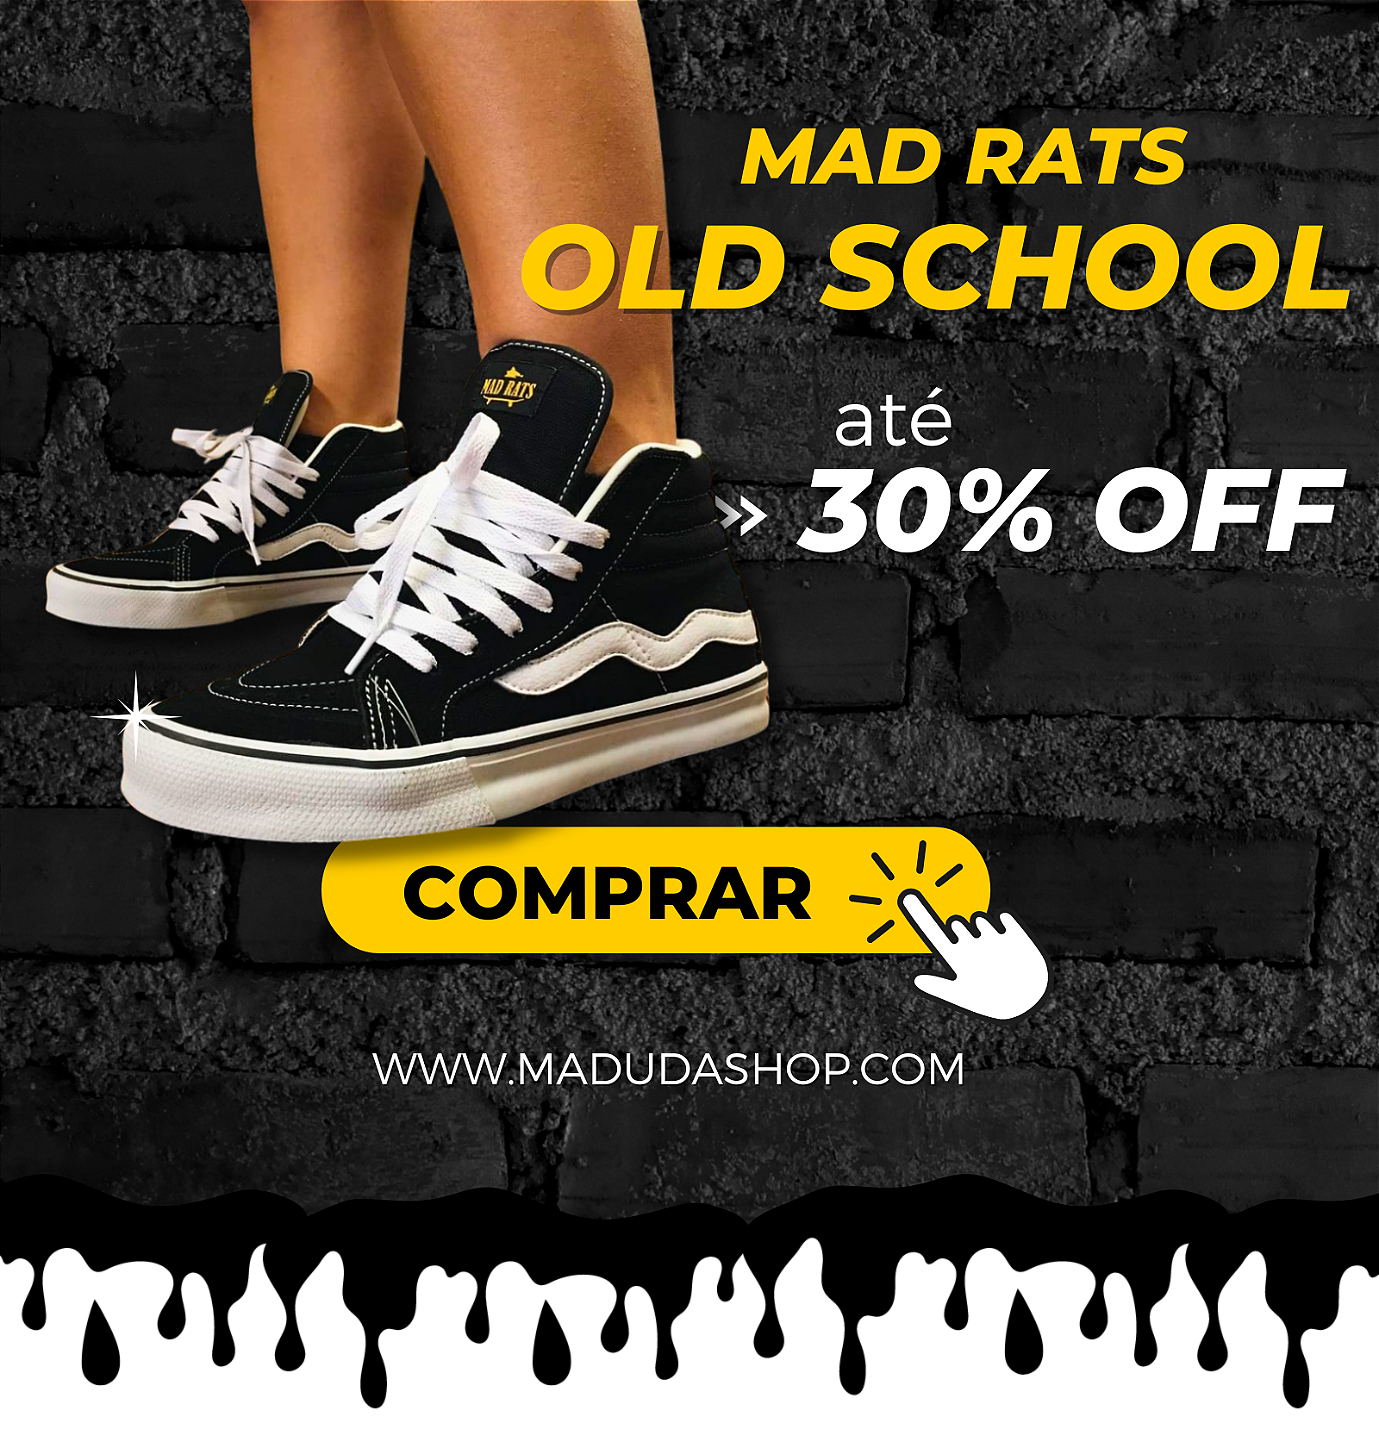 Tênis Hi Top Old School Mad Rats Cano Alto Skate Maduda